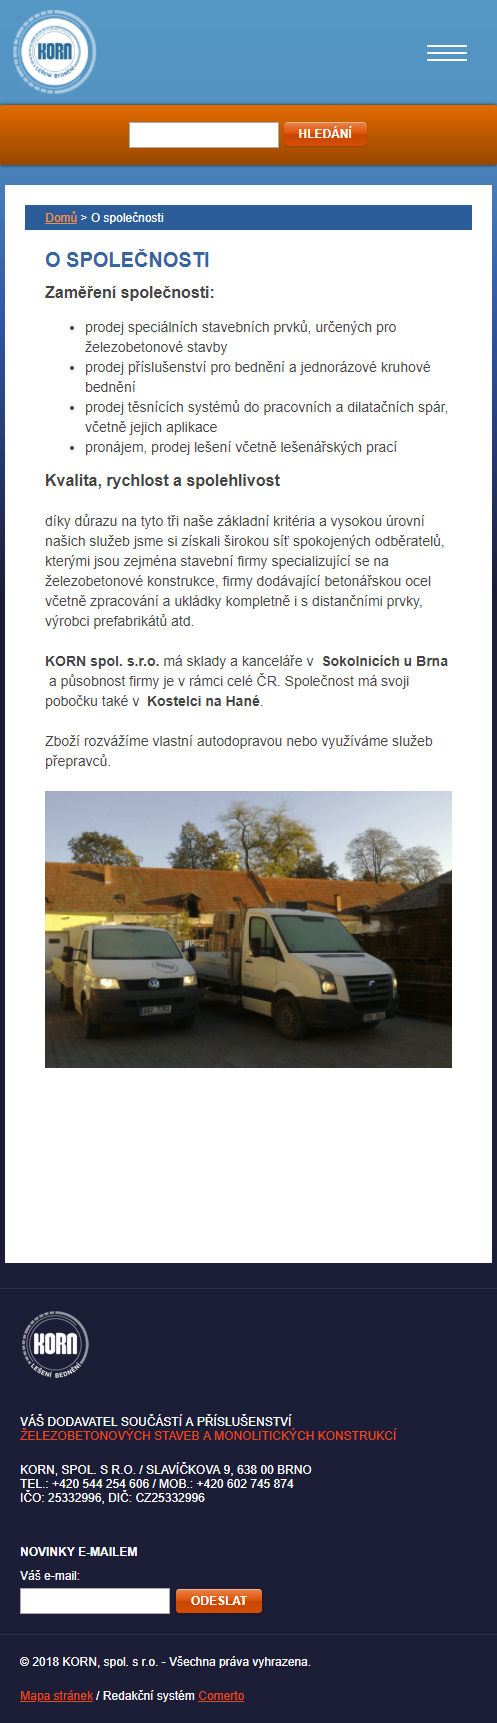 Kornbrno.cz - převod na redakční systém Comerto - Screenshot mobilní verze